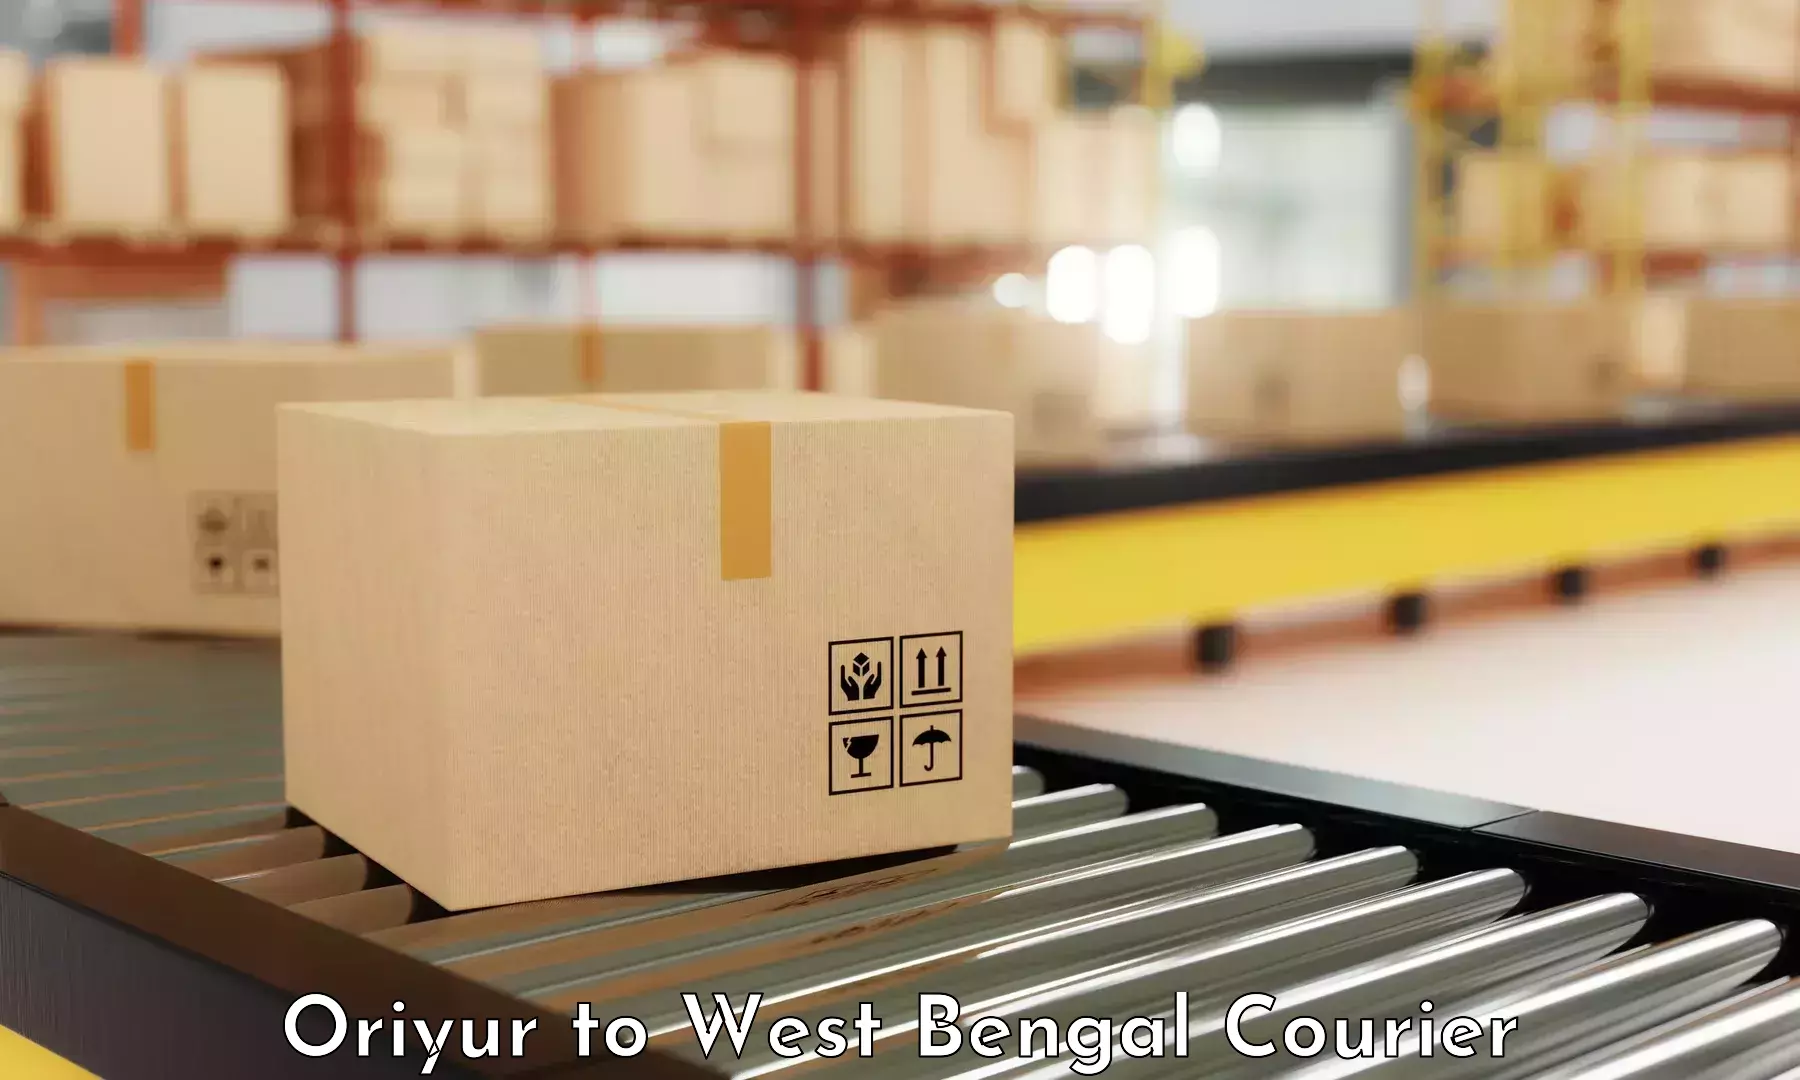 Next-generation courier services Oriyur to Birbhum